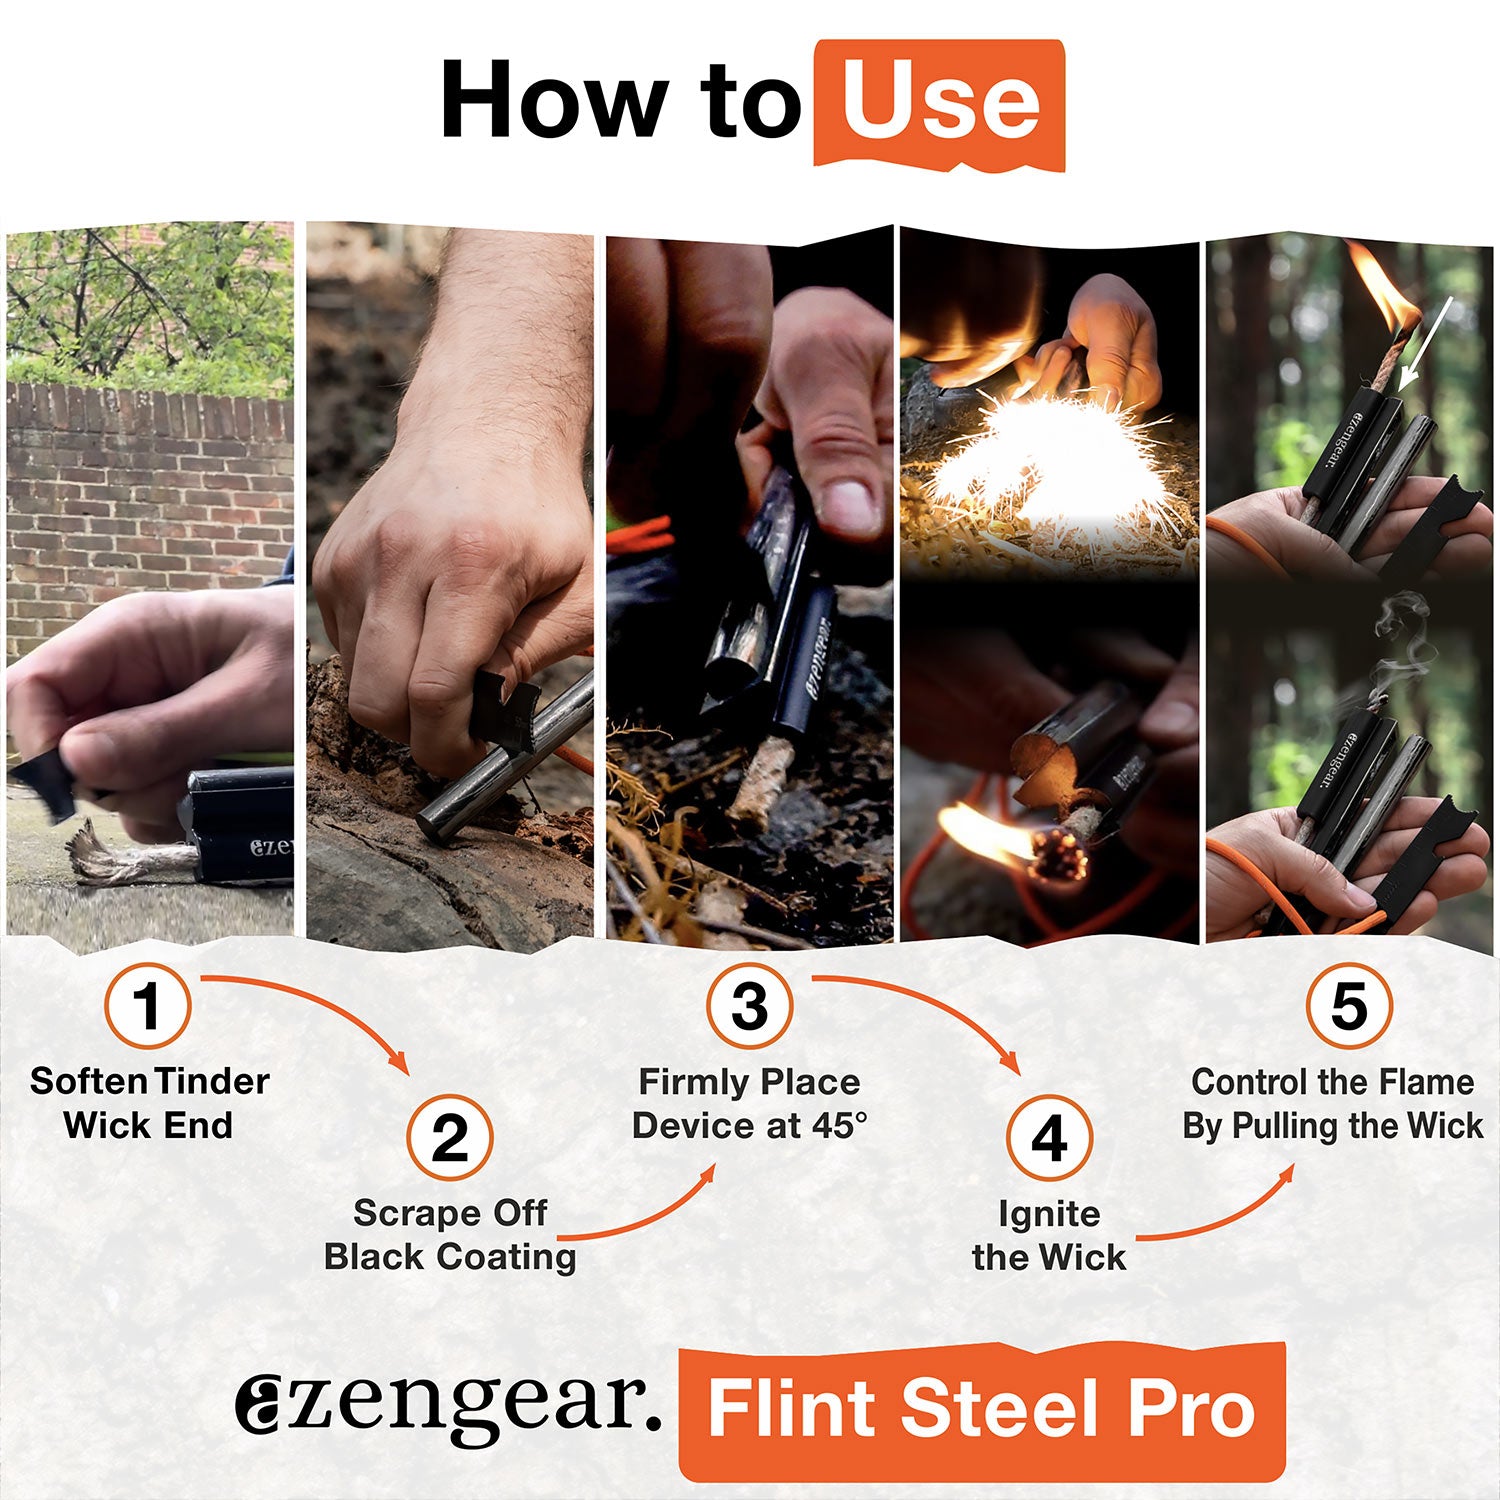 aZengear Flint Steel Pro - Outdoor Survival Kit Fire Starter - How to Use